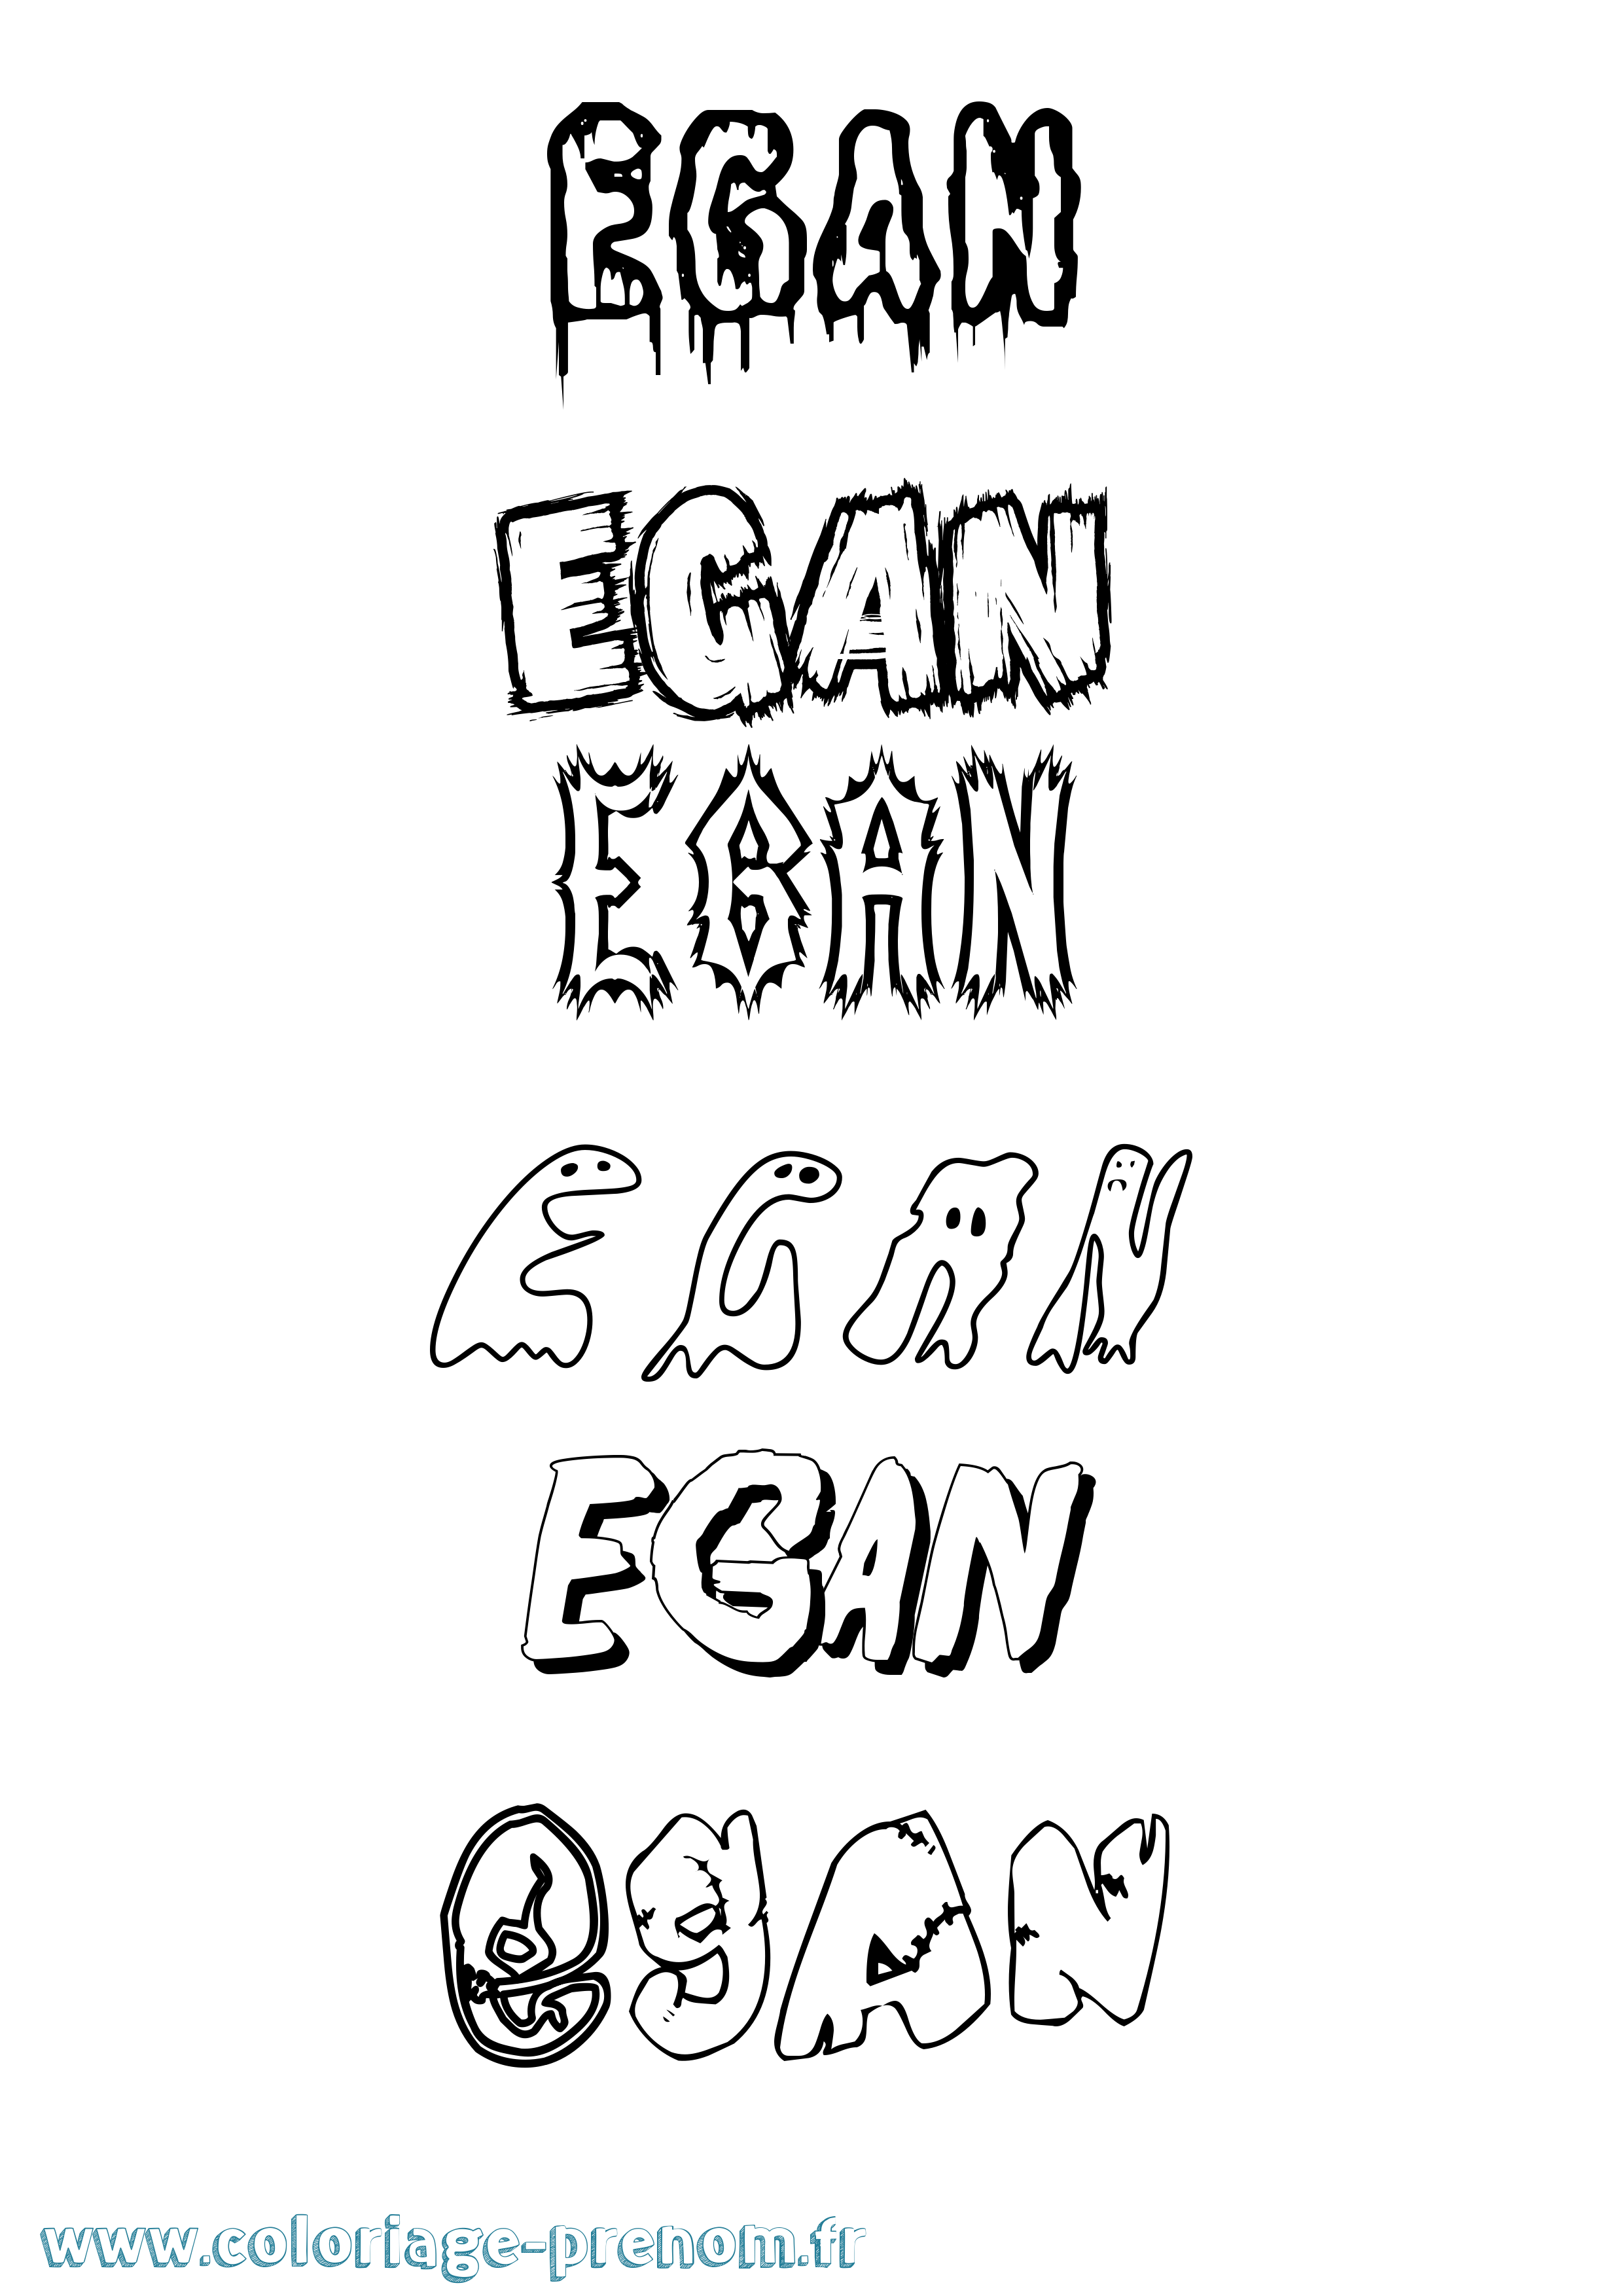 Coloriage prénom Egan Frisson